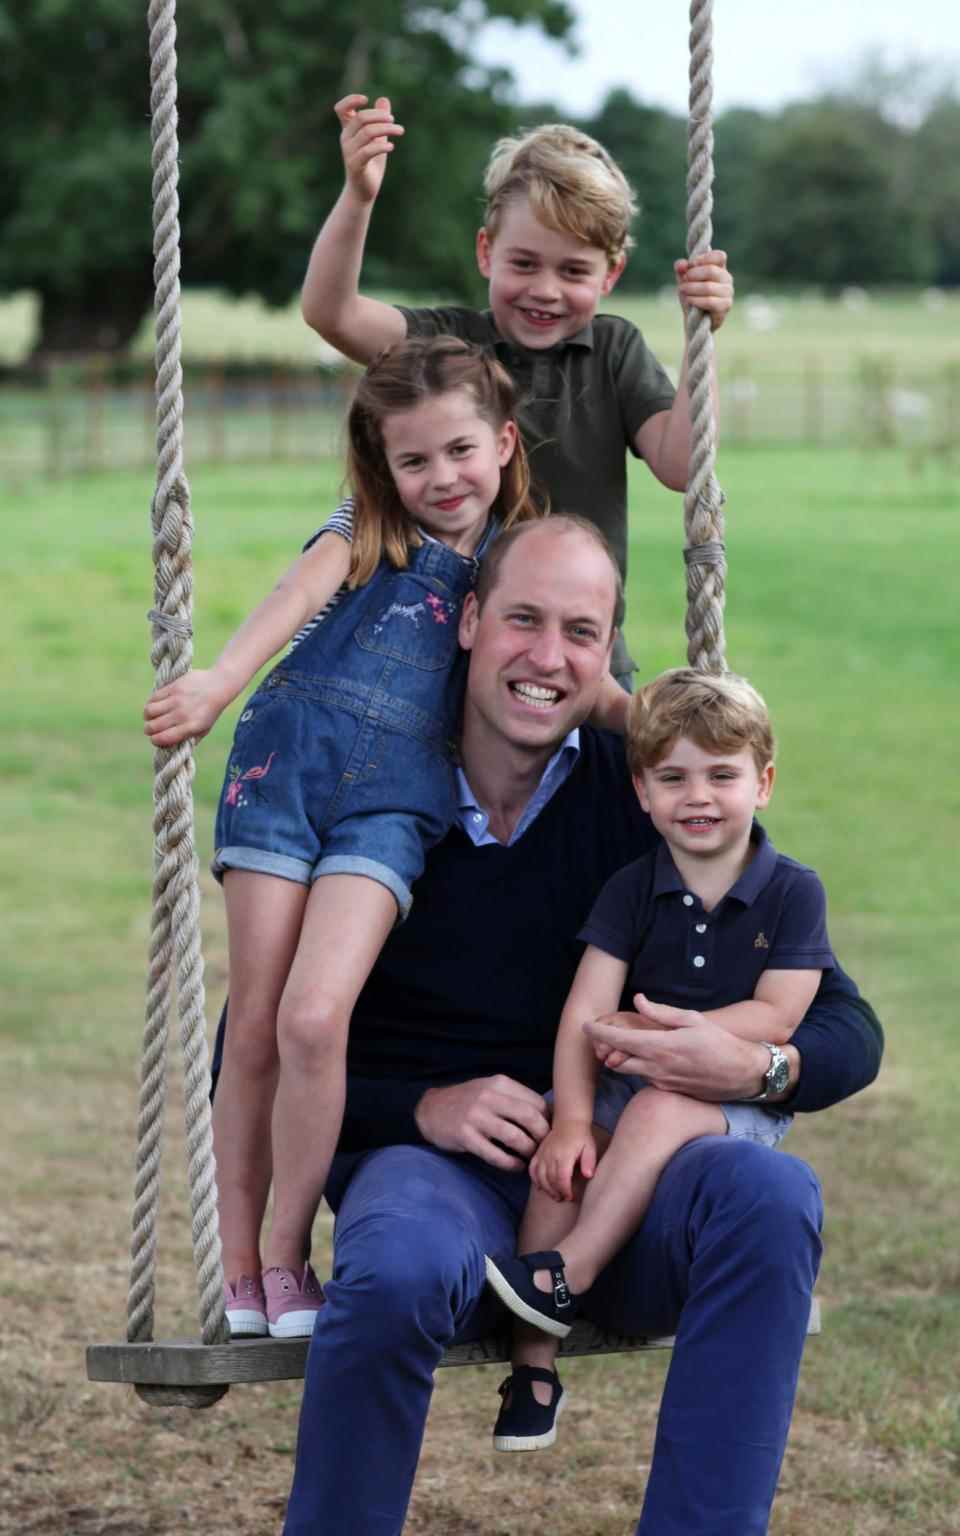 Une photographie prise par la duchesse de Cambridge pour marquer l'anniversaire du duc de Cambridge et la fête des pères en juin 2020 - La duchesse de Cambridge